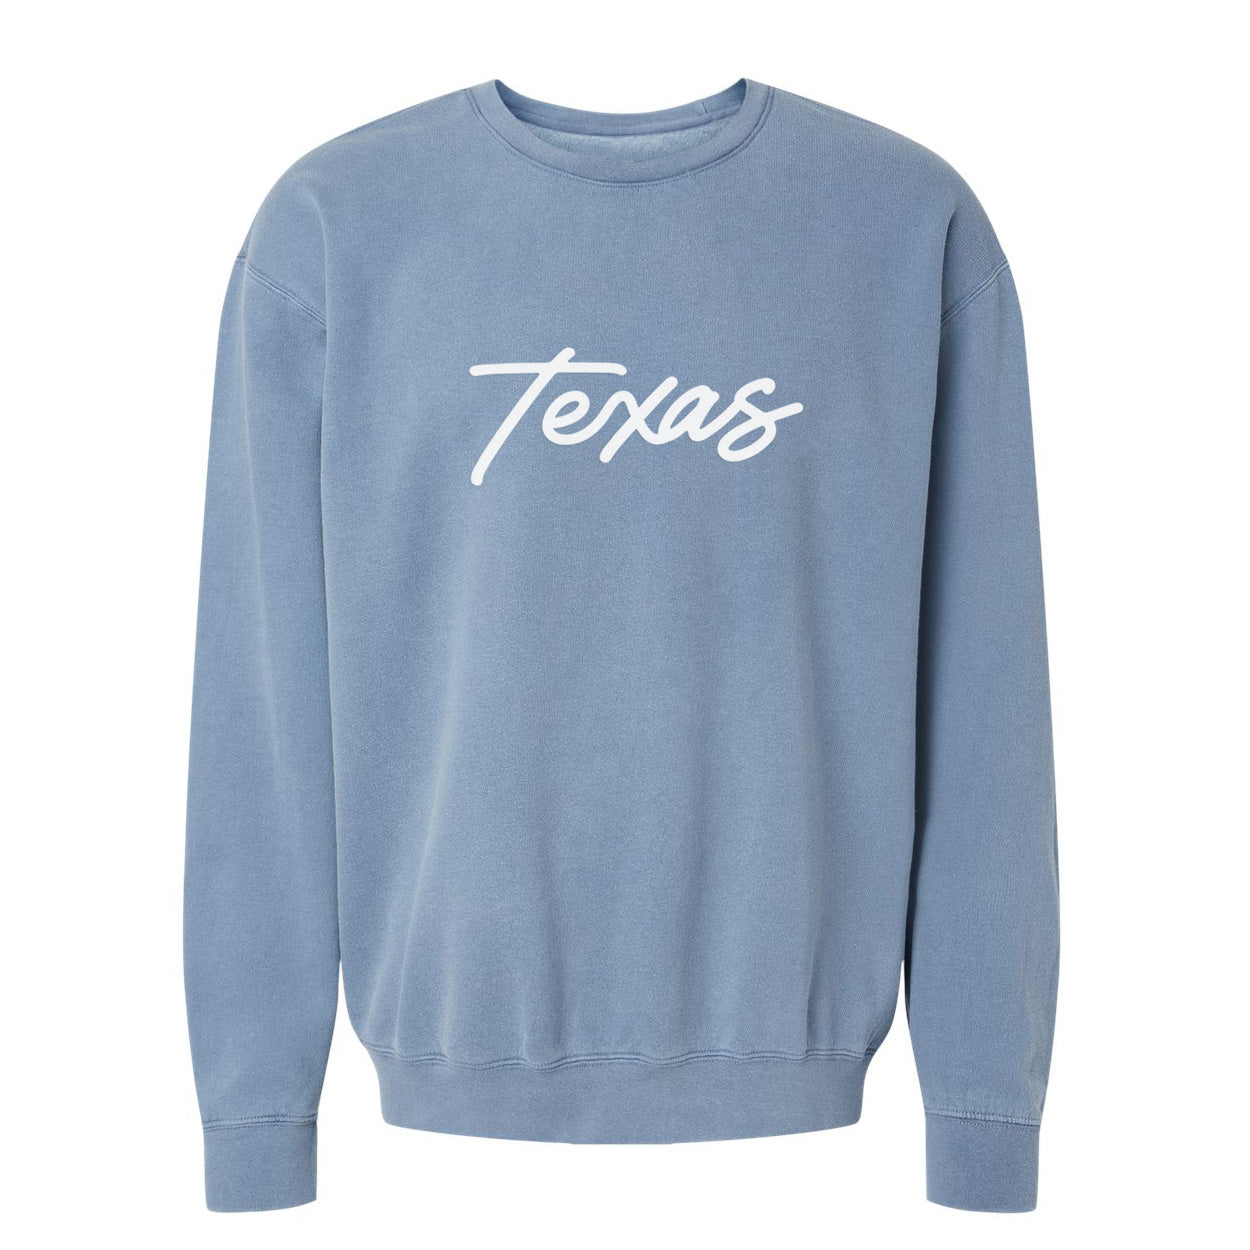 Texas Cursive Washed Sweatshirt